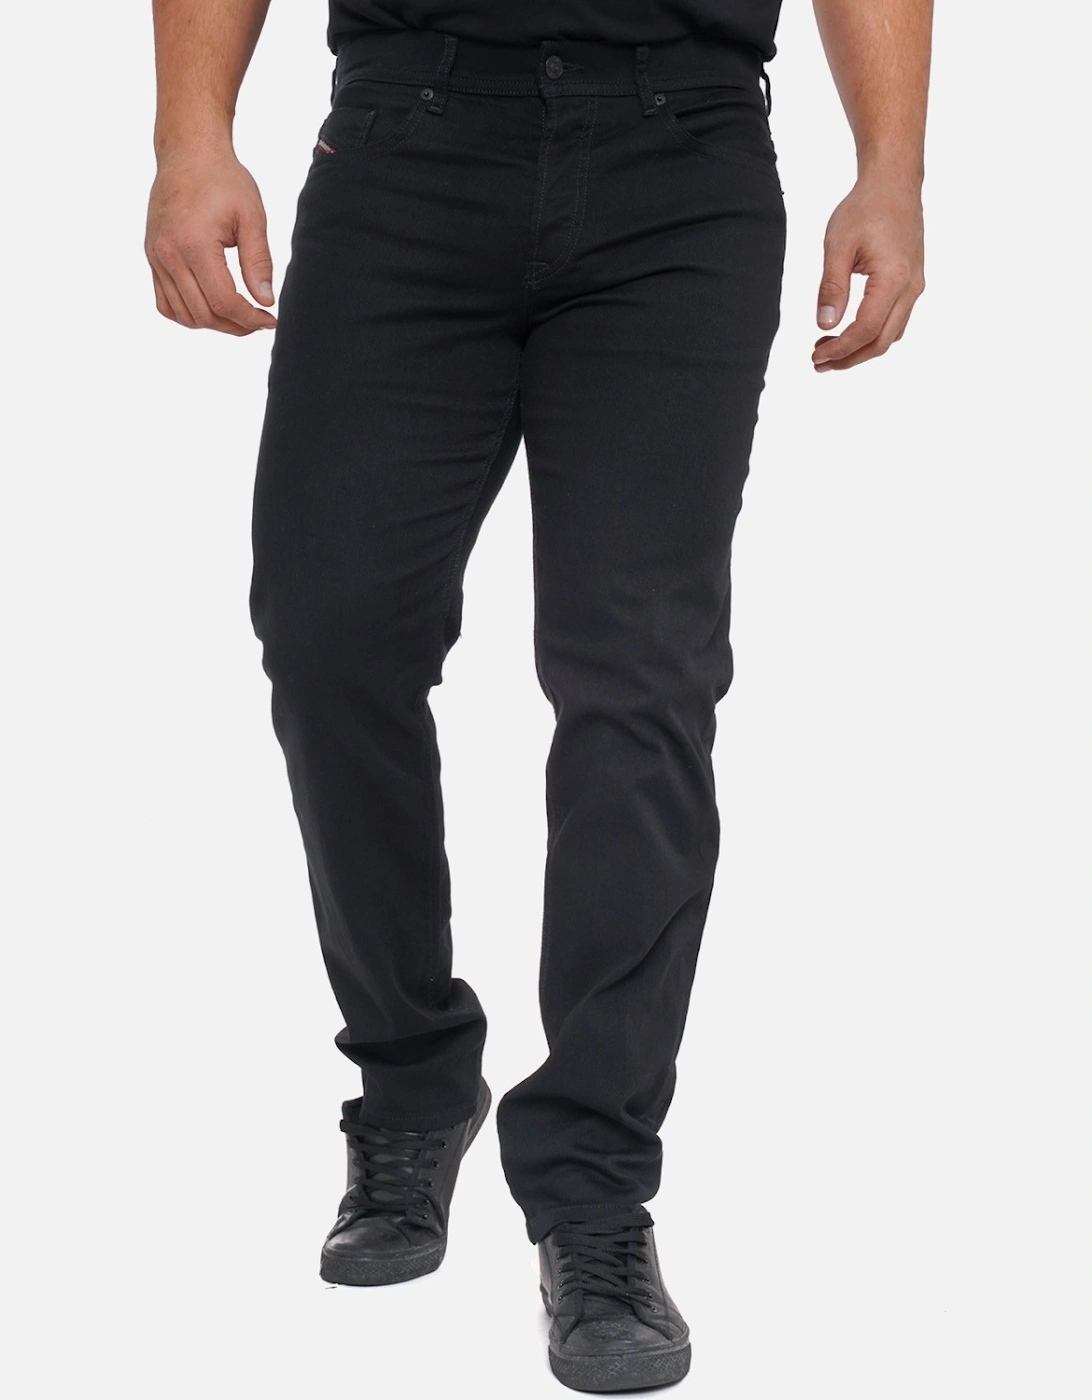 Mens D-Finitive Jeans (Black)